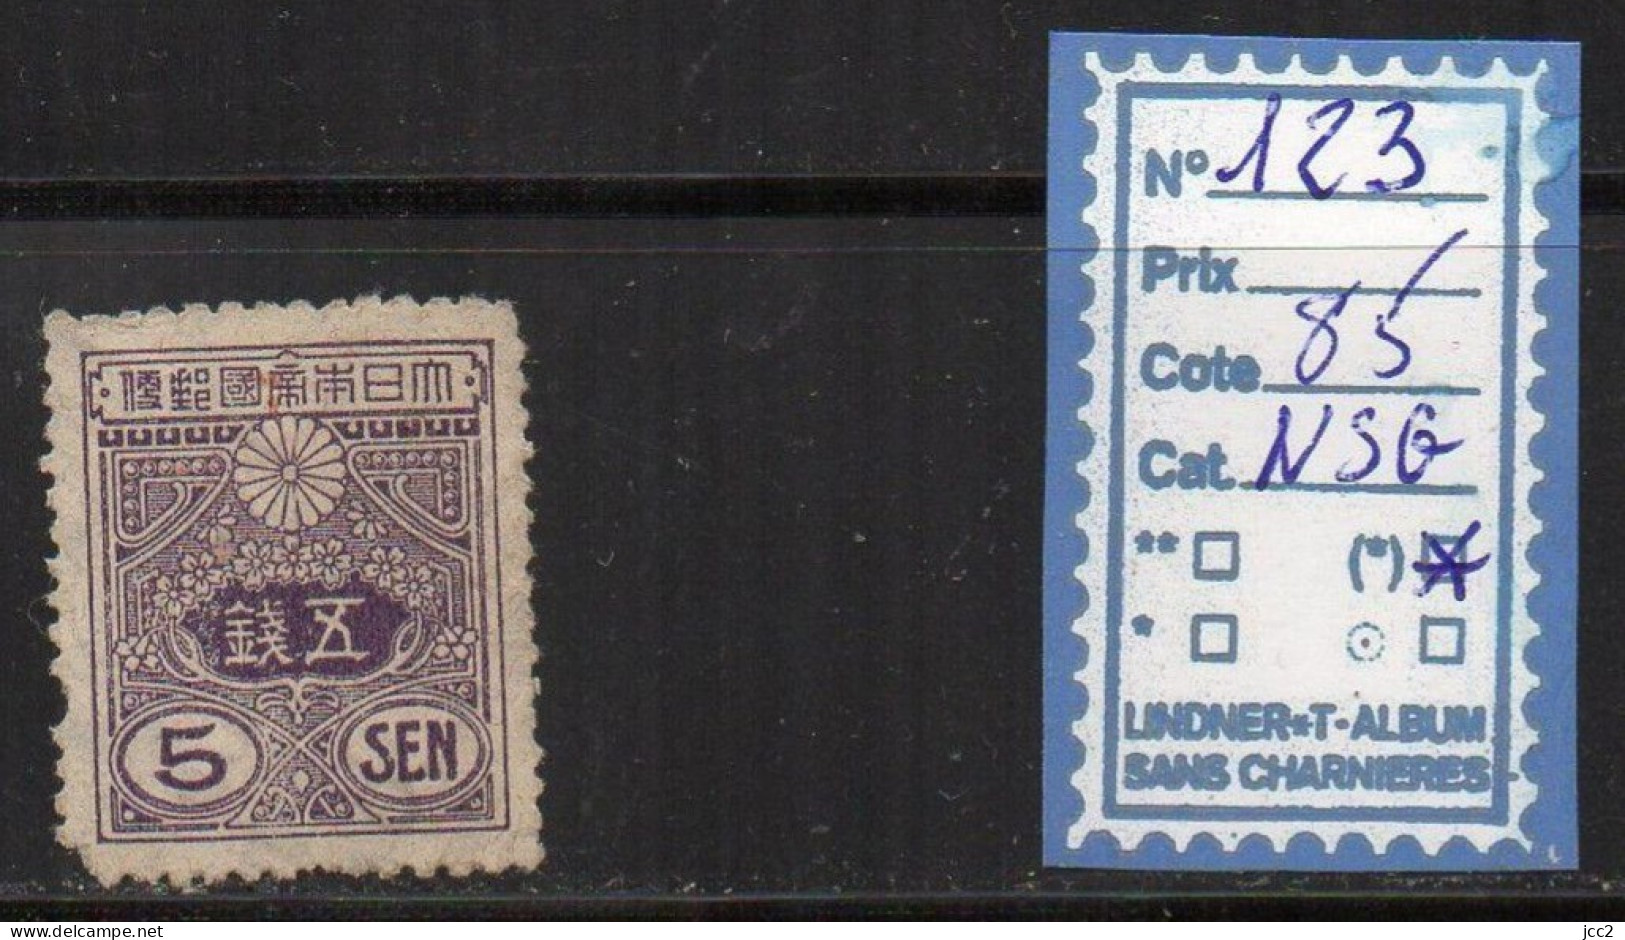 Japon N°123 NSG - Unused Stamps